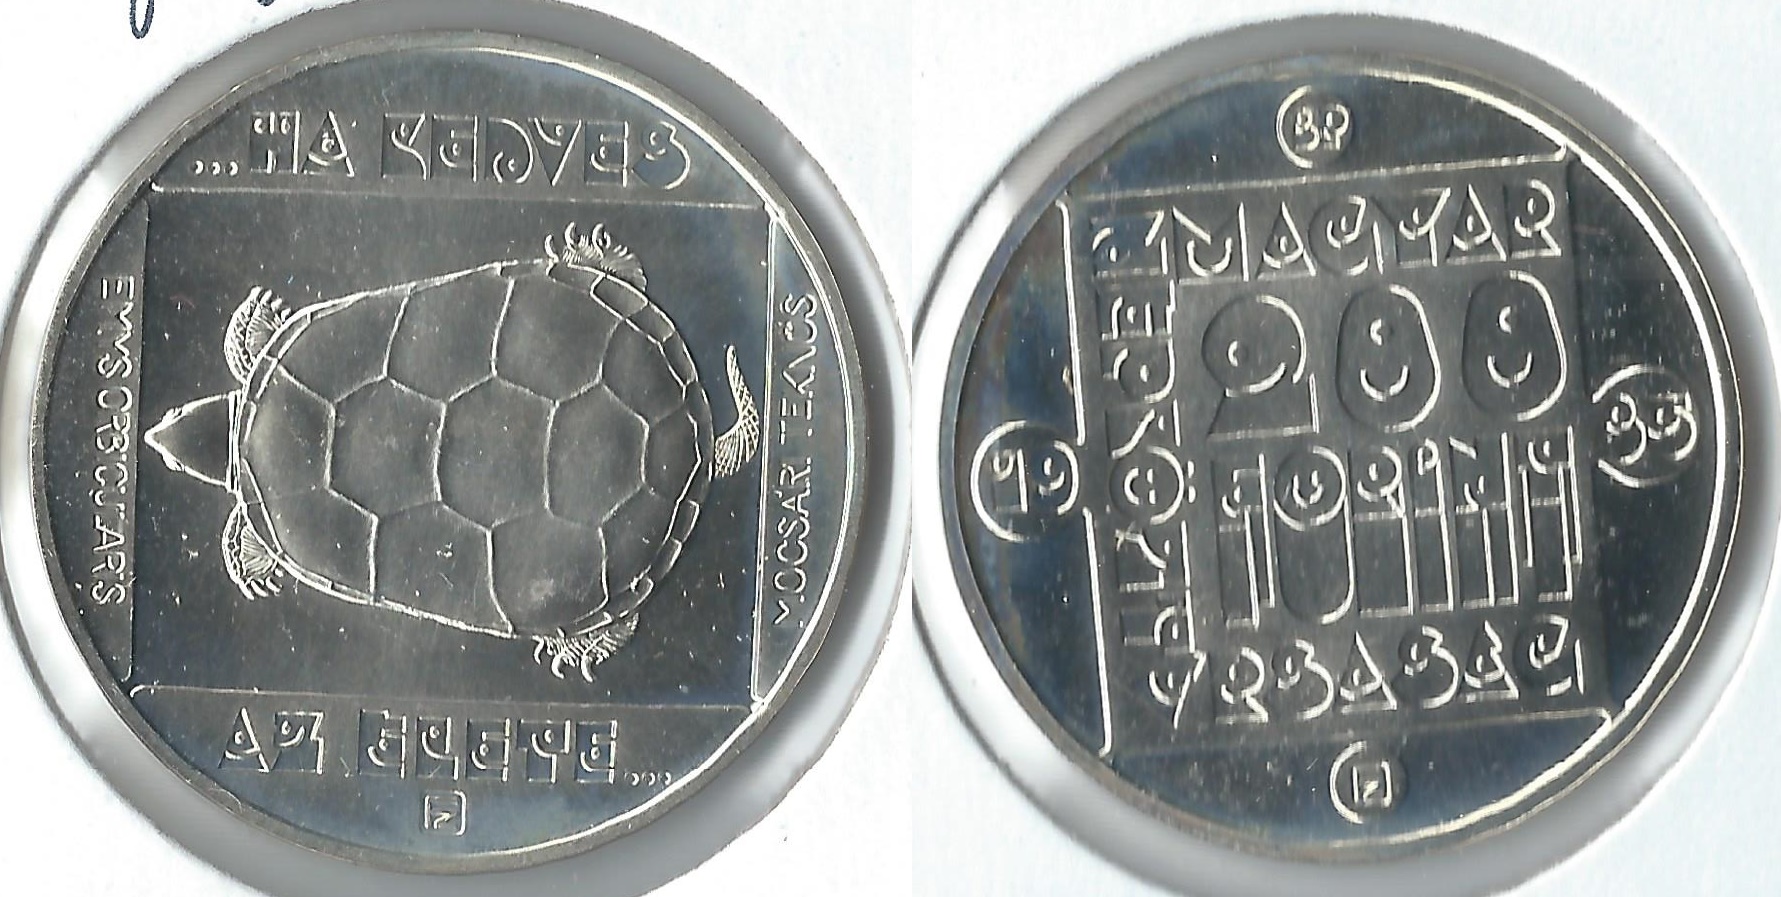 1985 hungary 200 forint.jpg